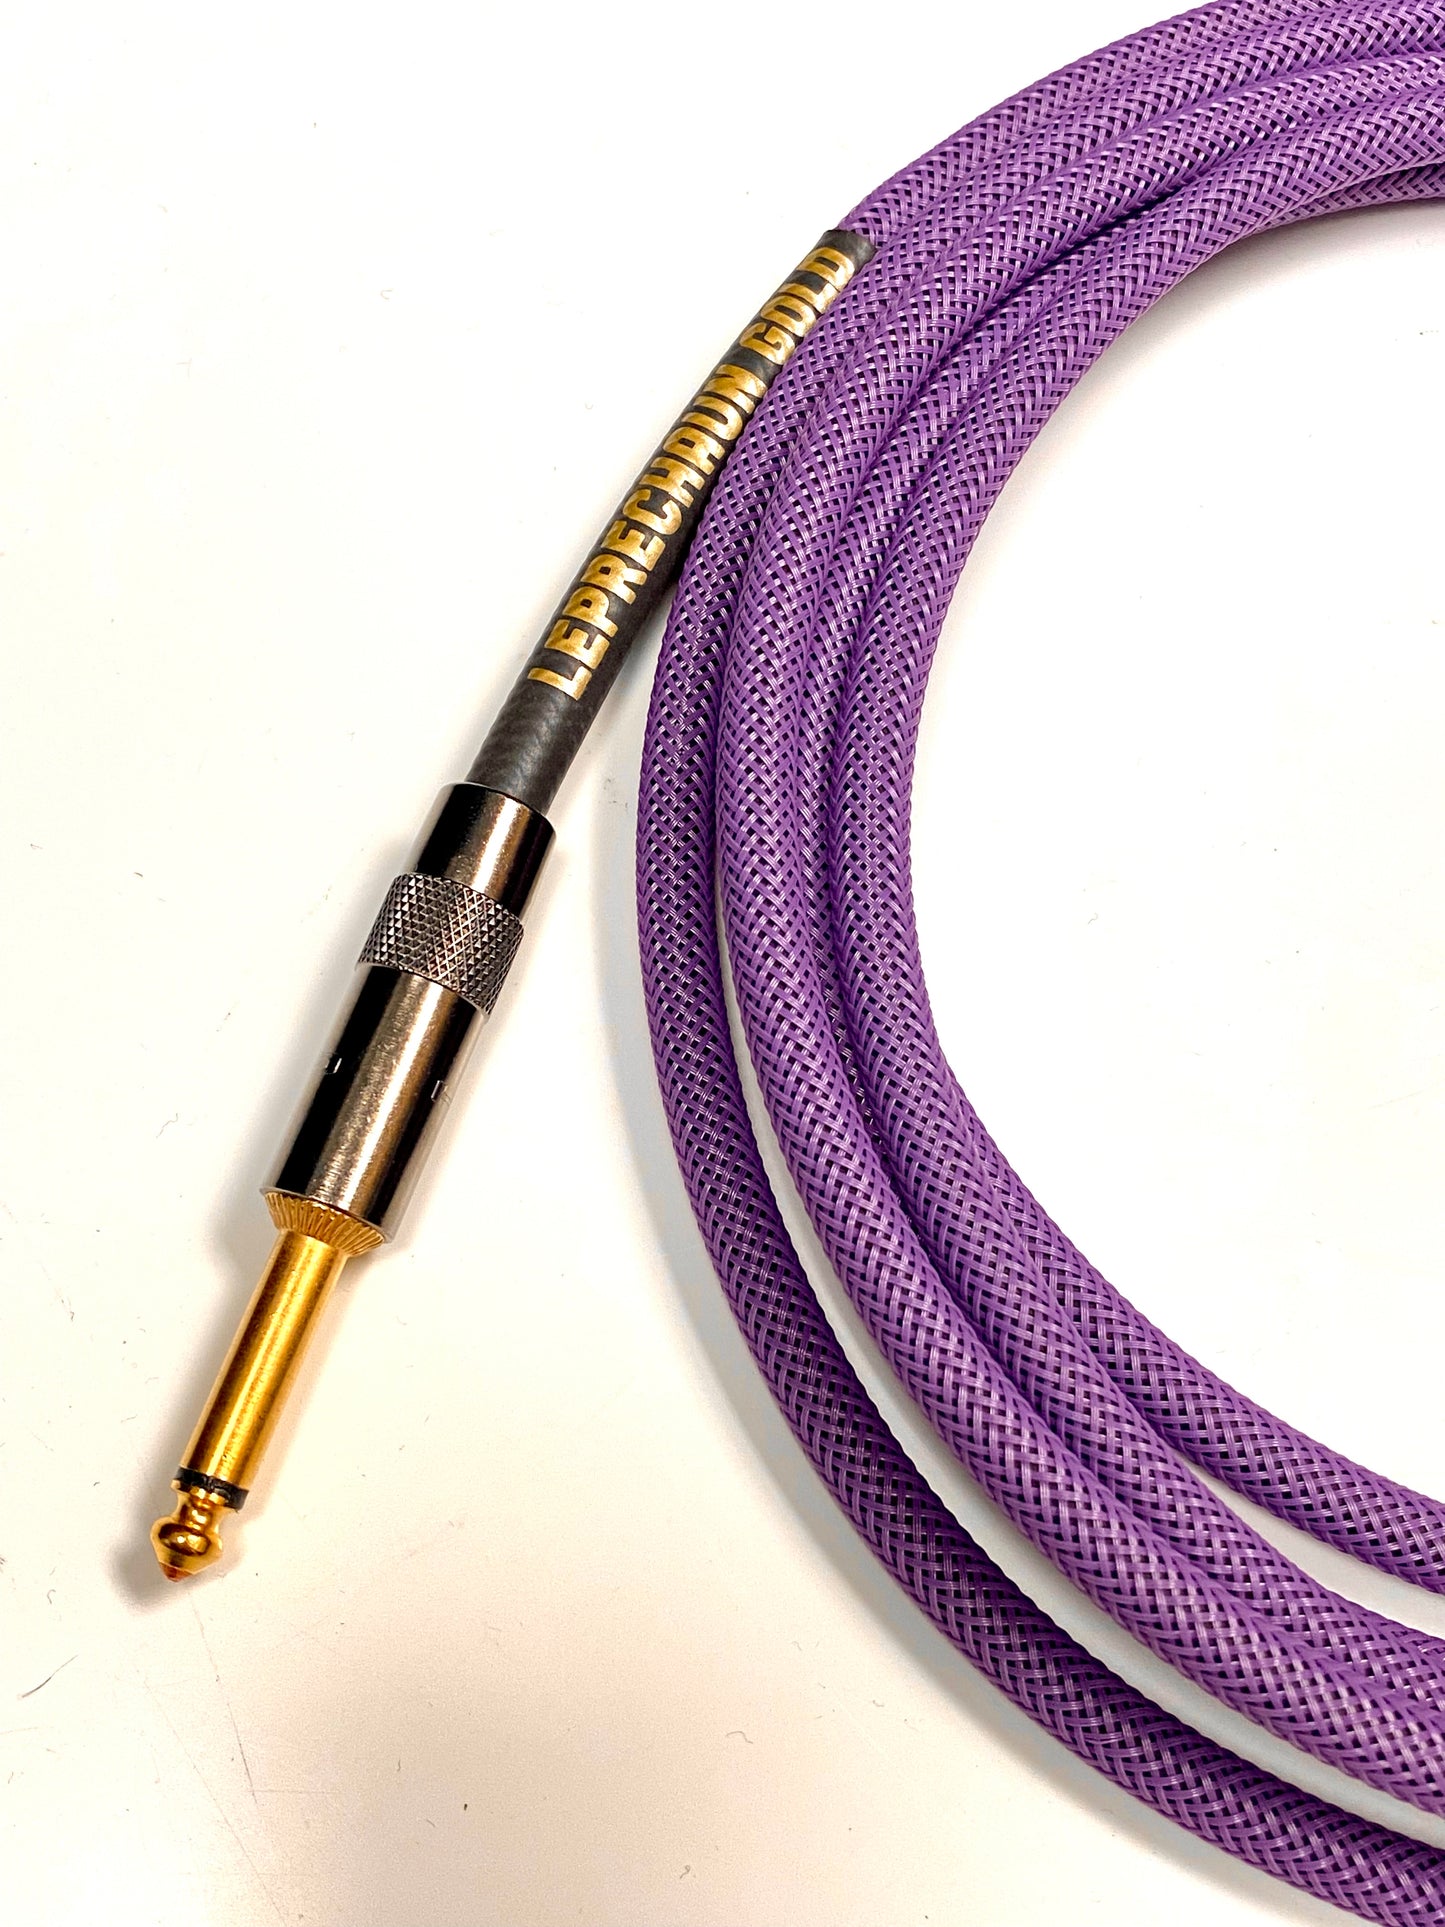 Leprechaun Gold Instrument Cable (Vivid Violet)